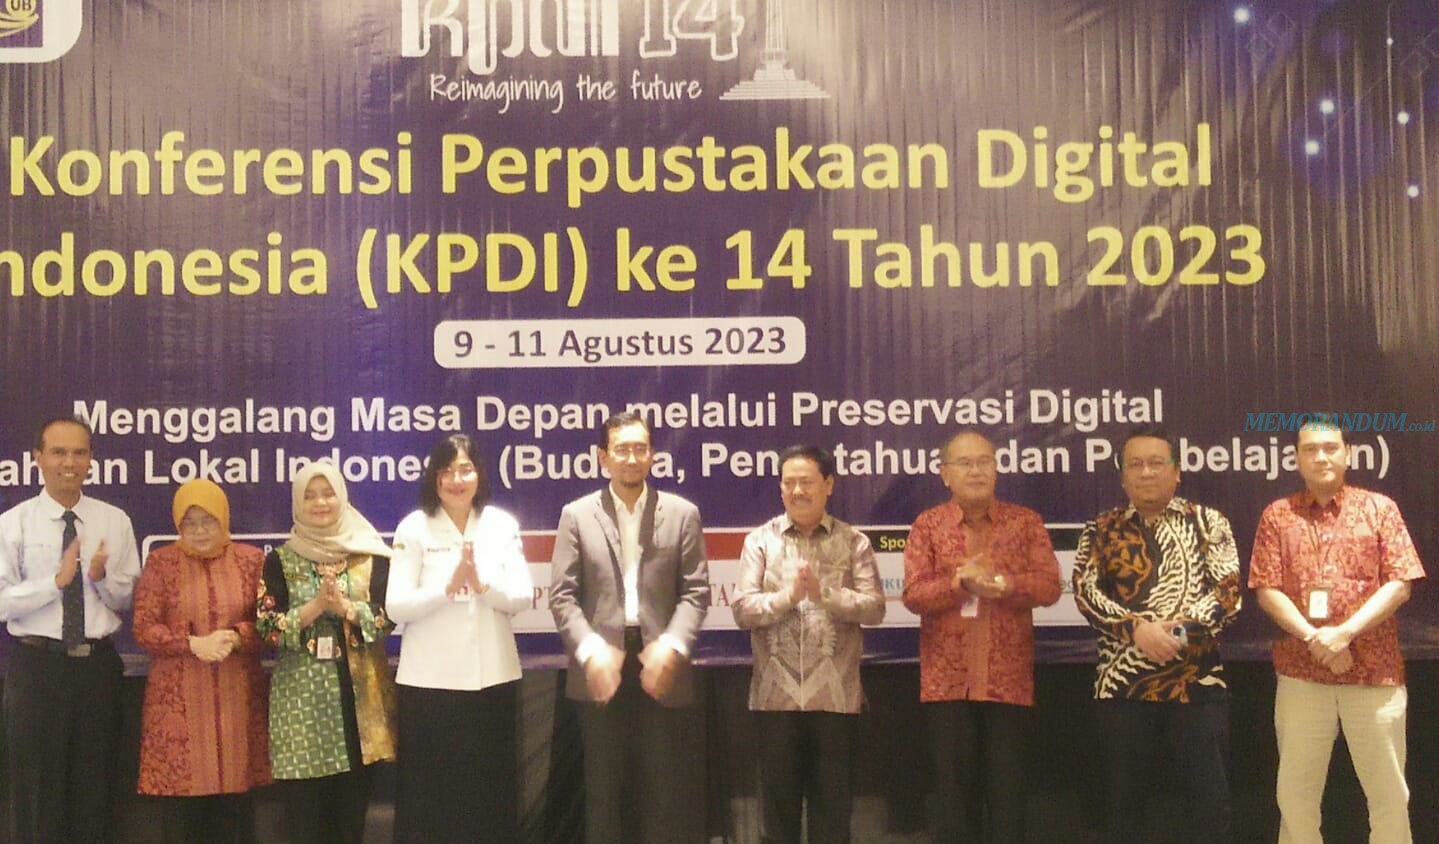 Peserta Konferensi Perpustakaan Digital Indonesia Membludak, UB Apresiasi Panitia